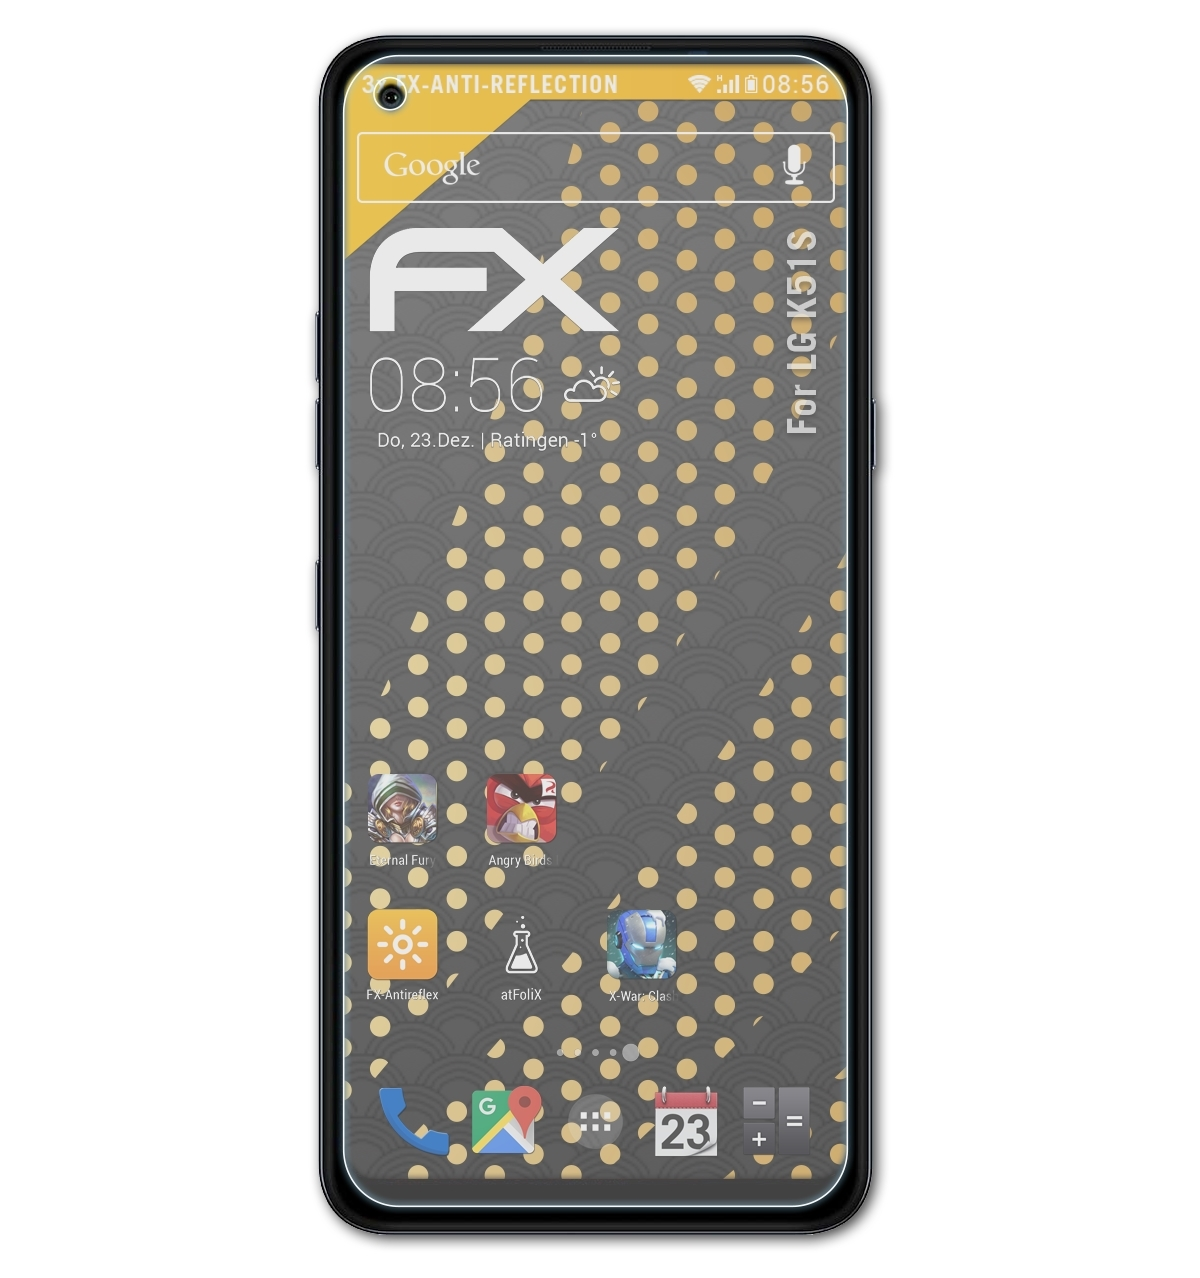 FX-Antireflex K51S) Displayschutz(für LG 3x ATFOLIX